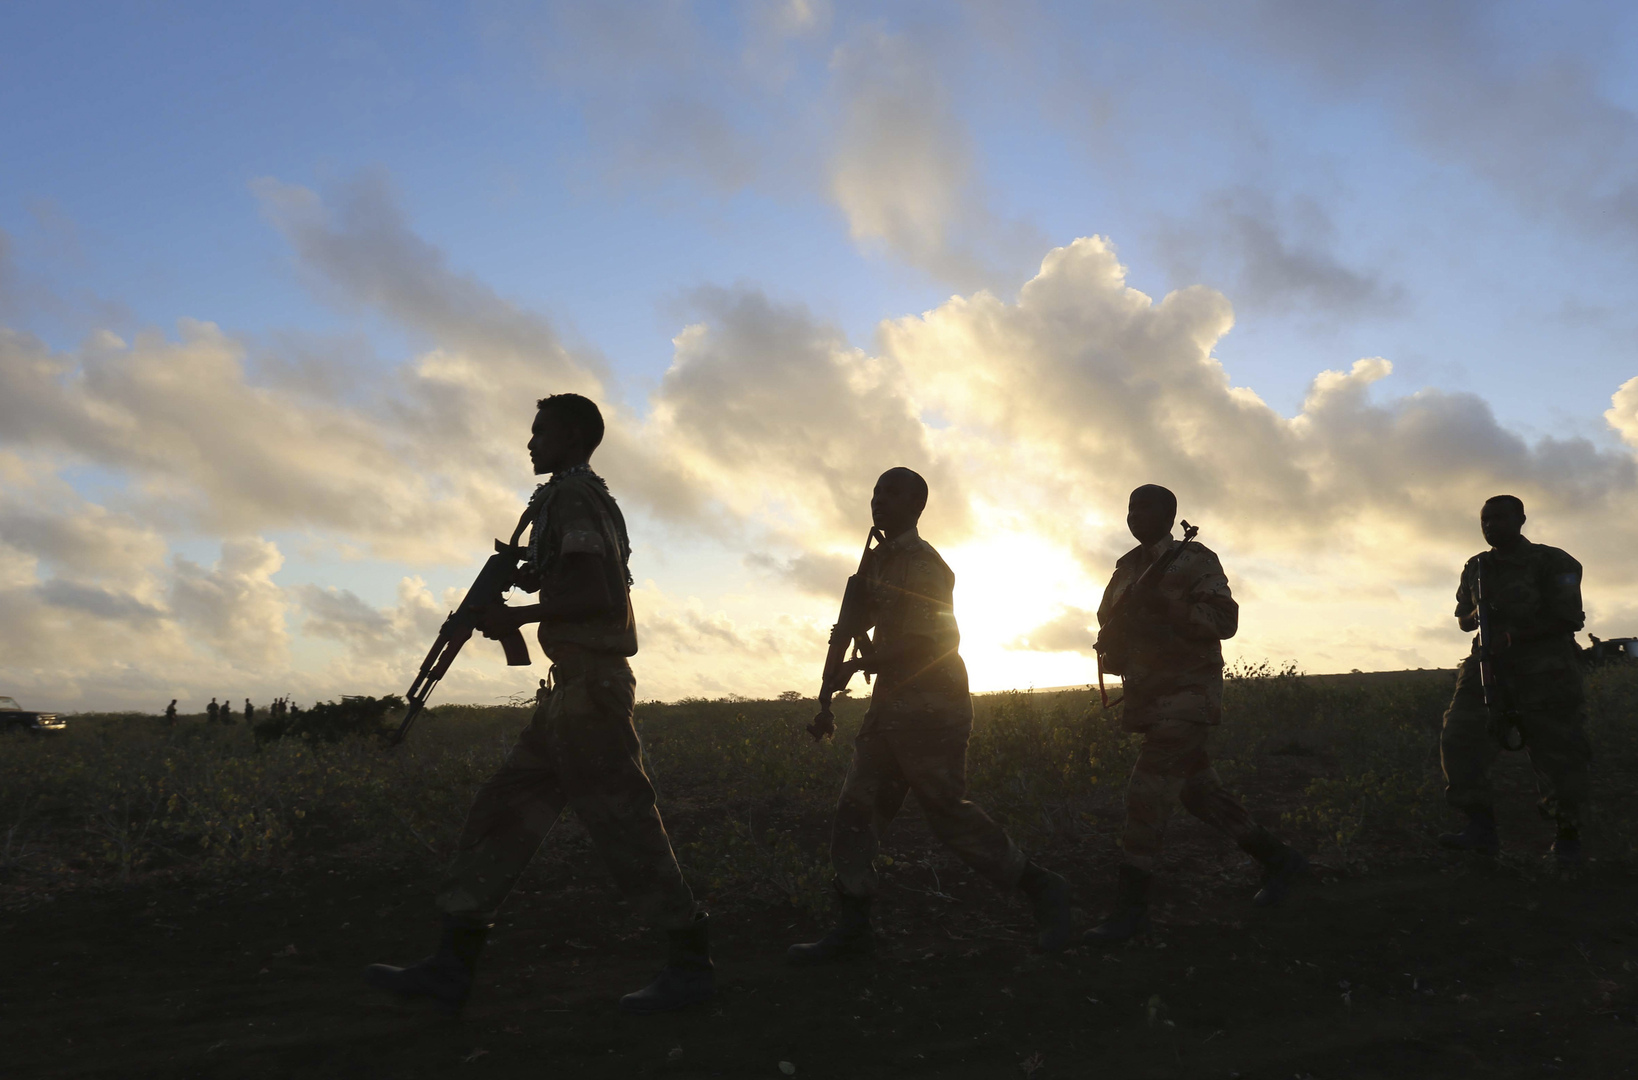 معركة بالأسلحة النارية وسط مقديشو والأمن الصومالي يغلق الشوارع (فيديو)